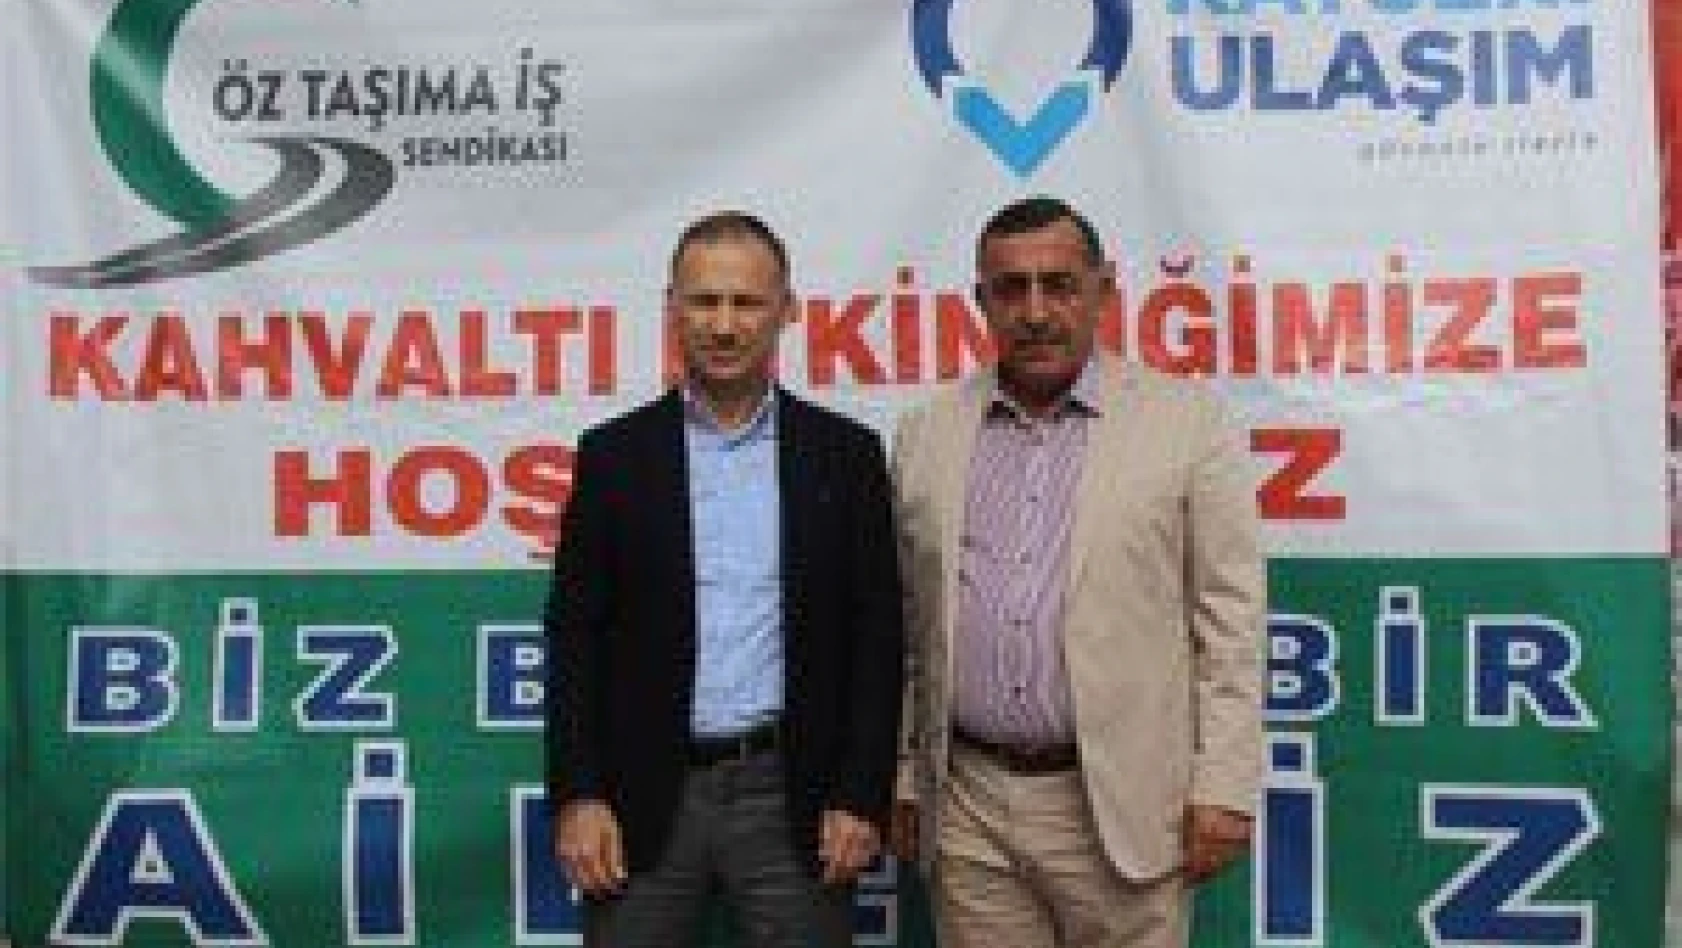 Öz Taşıma-İş Sendikası Genel Başkanı Mustafa Toruntay: 'Ülkemizin geleceği aydınlıktır'   